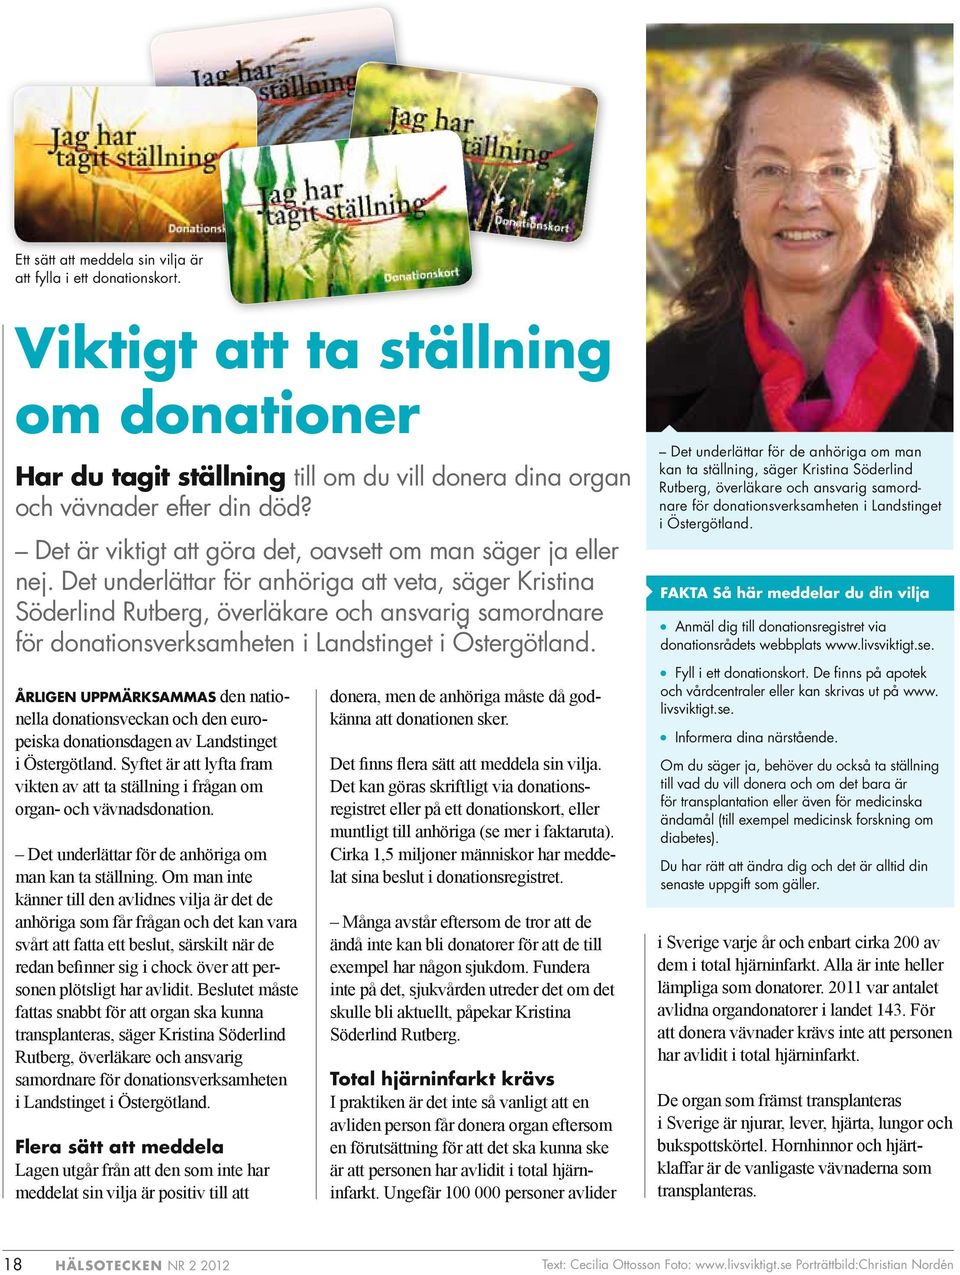 Det underlättar för anhöriga att veta, säger Kristina Söderlind Rutberg, överläkare och ansvarig samordnare för donationsverksamheten i Landstinget i Östergötland.